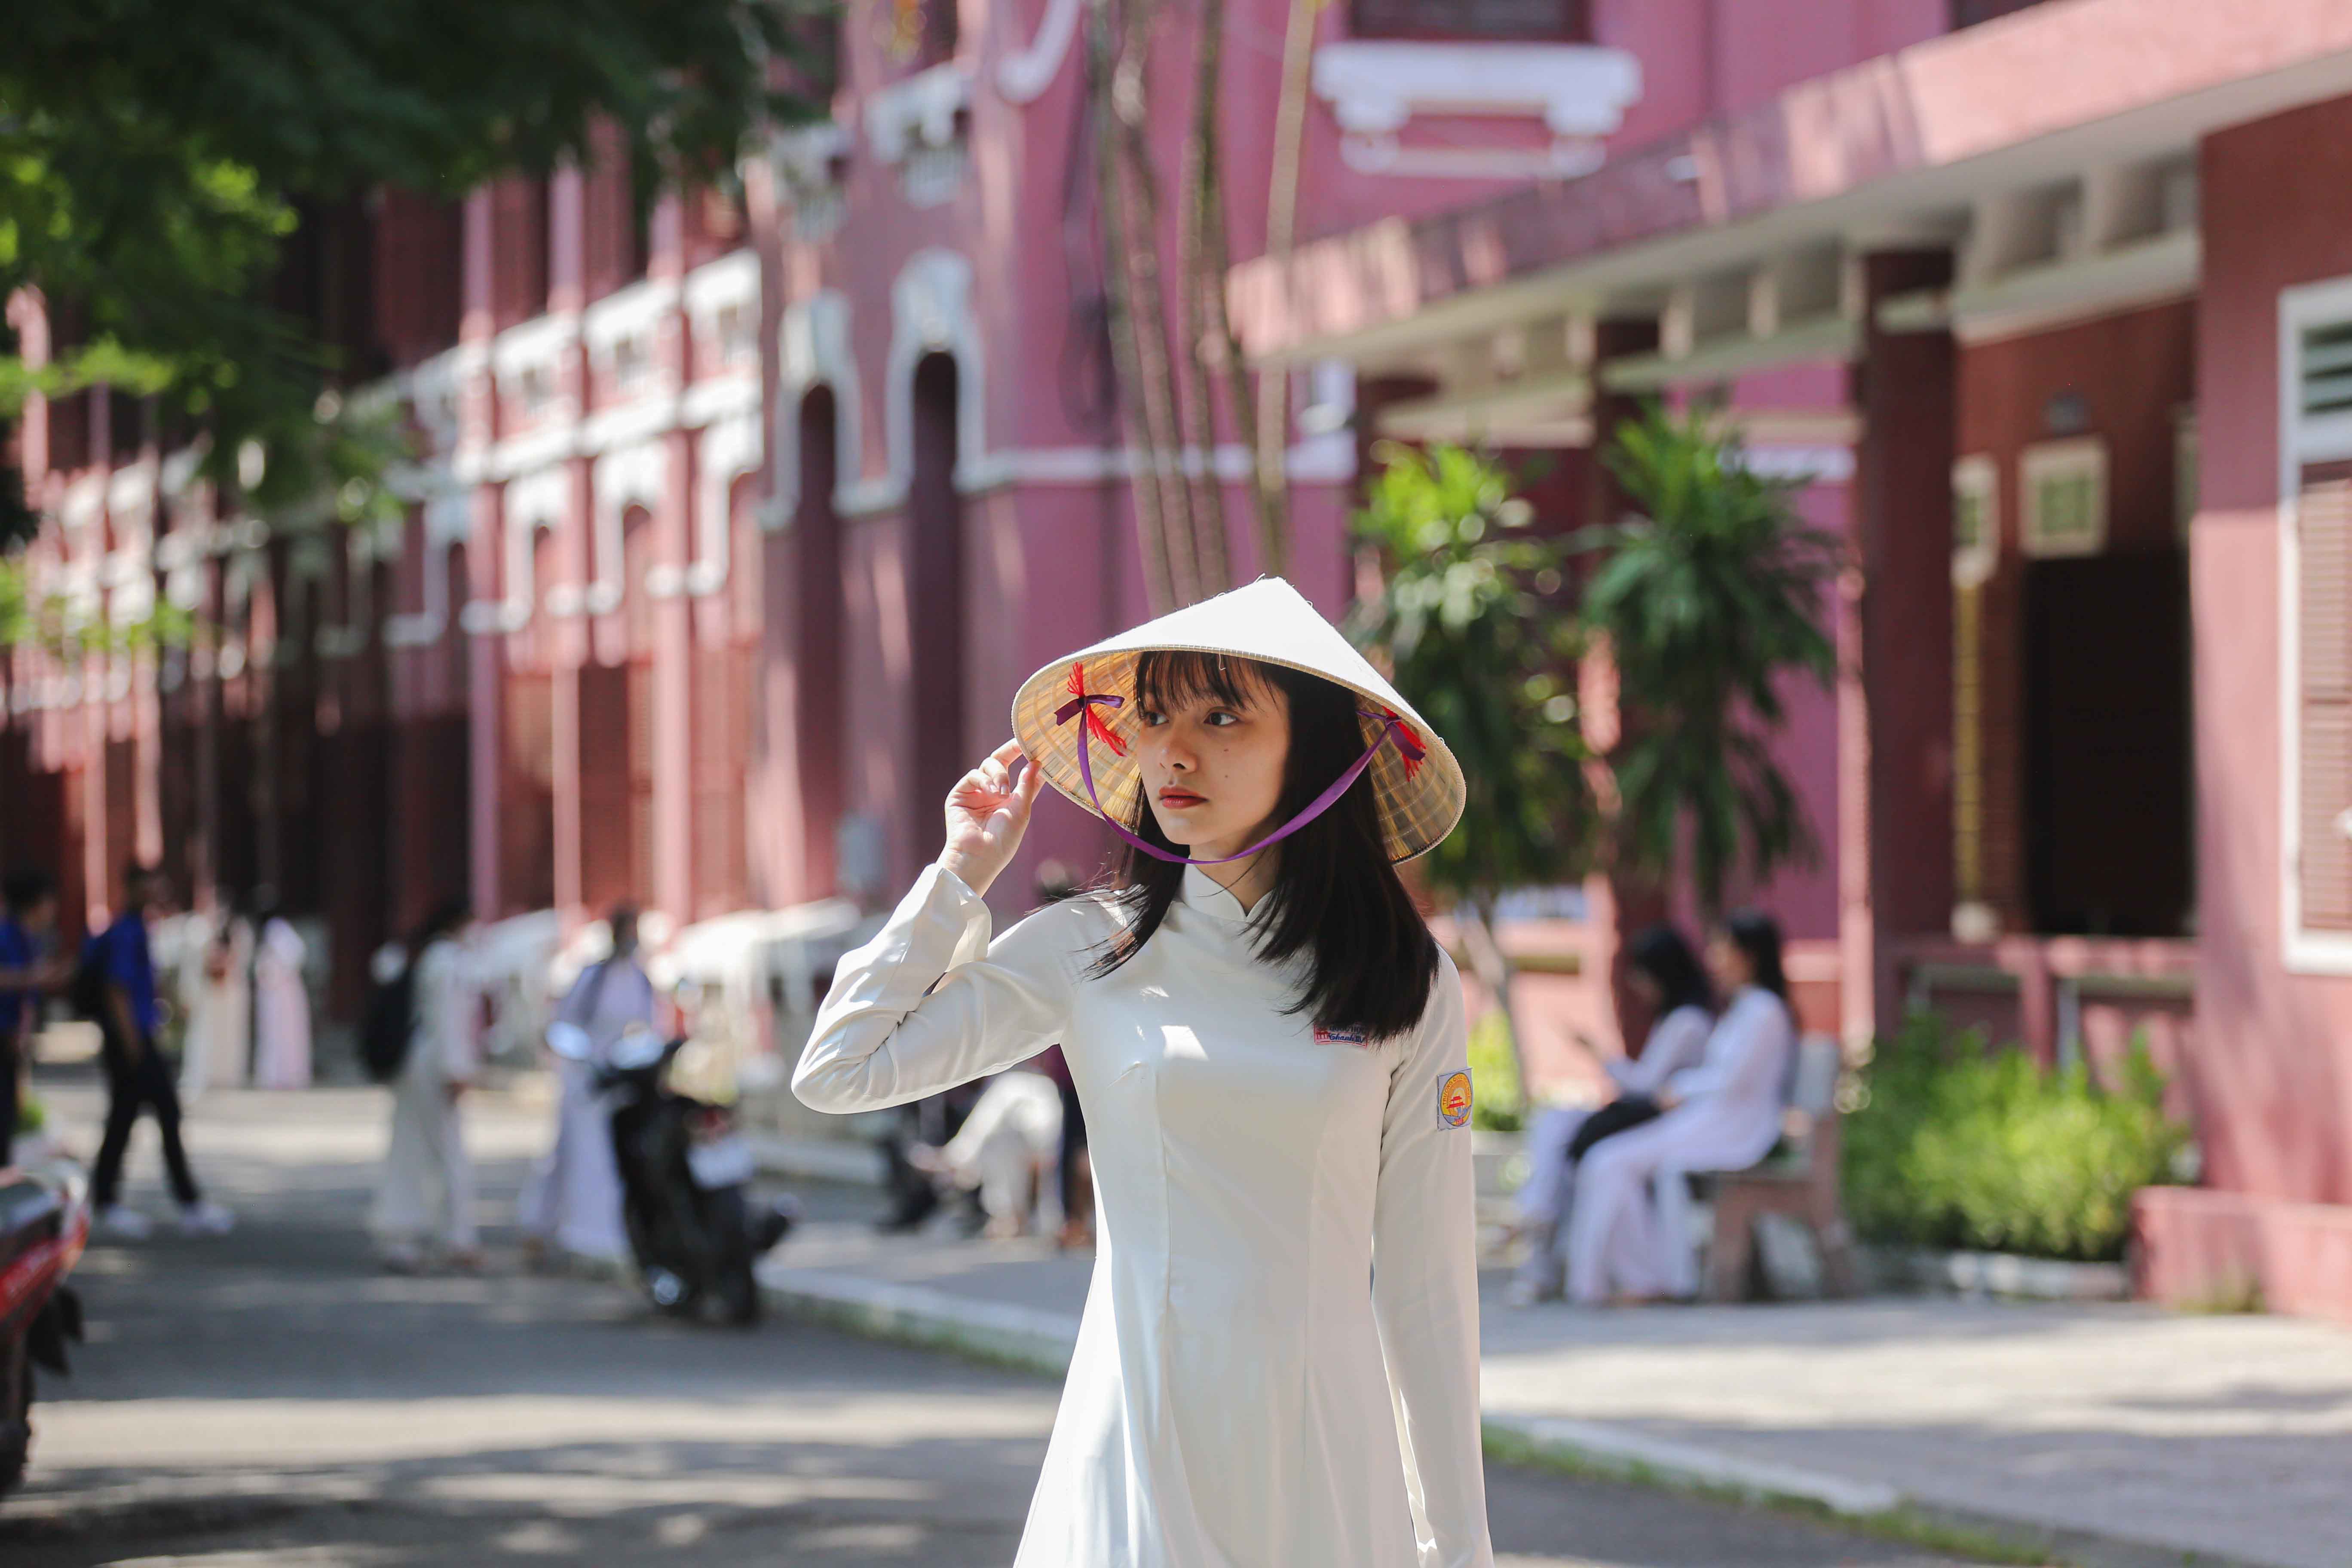 Áo dài, nón lá: Áo dài, nón lá là bộ đôi trang phục không thể thiếu trong các buổi lễ và sự kiện trọng đại của người Việt. Thông qua những hình ảnh đẹp lung linh với những bộ trang phục áo dài, nón lá tuyệt đẹp, bạn sẽ cảm nhận được sự trang nhã và thanh lịch của trang phục truyền thống Việt Nam.